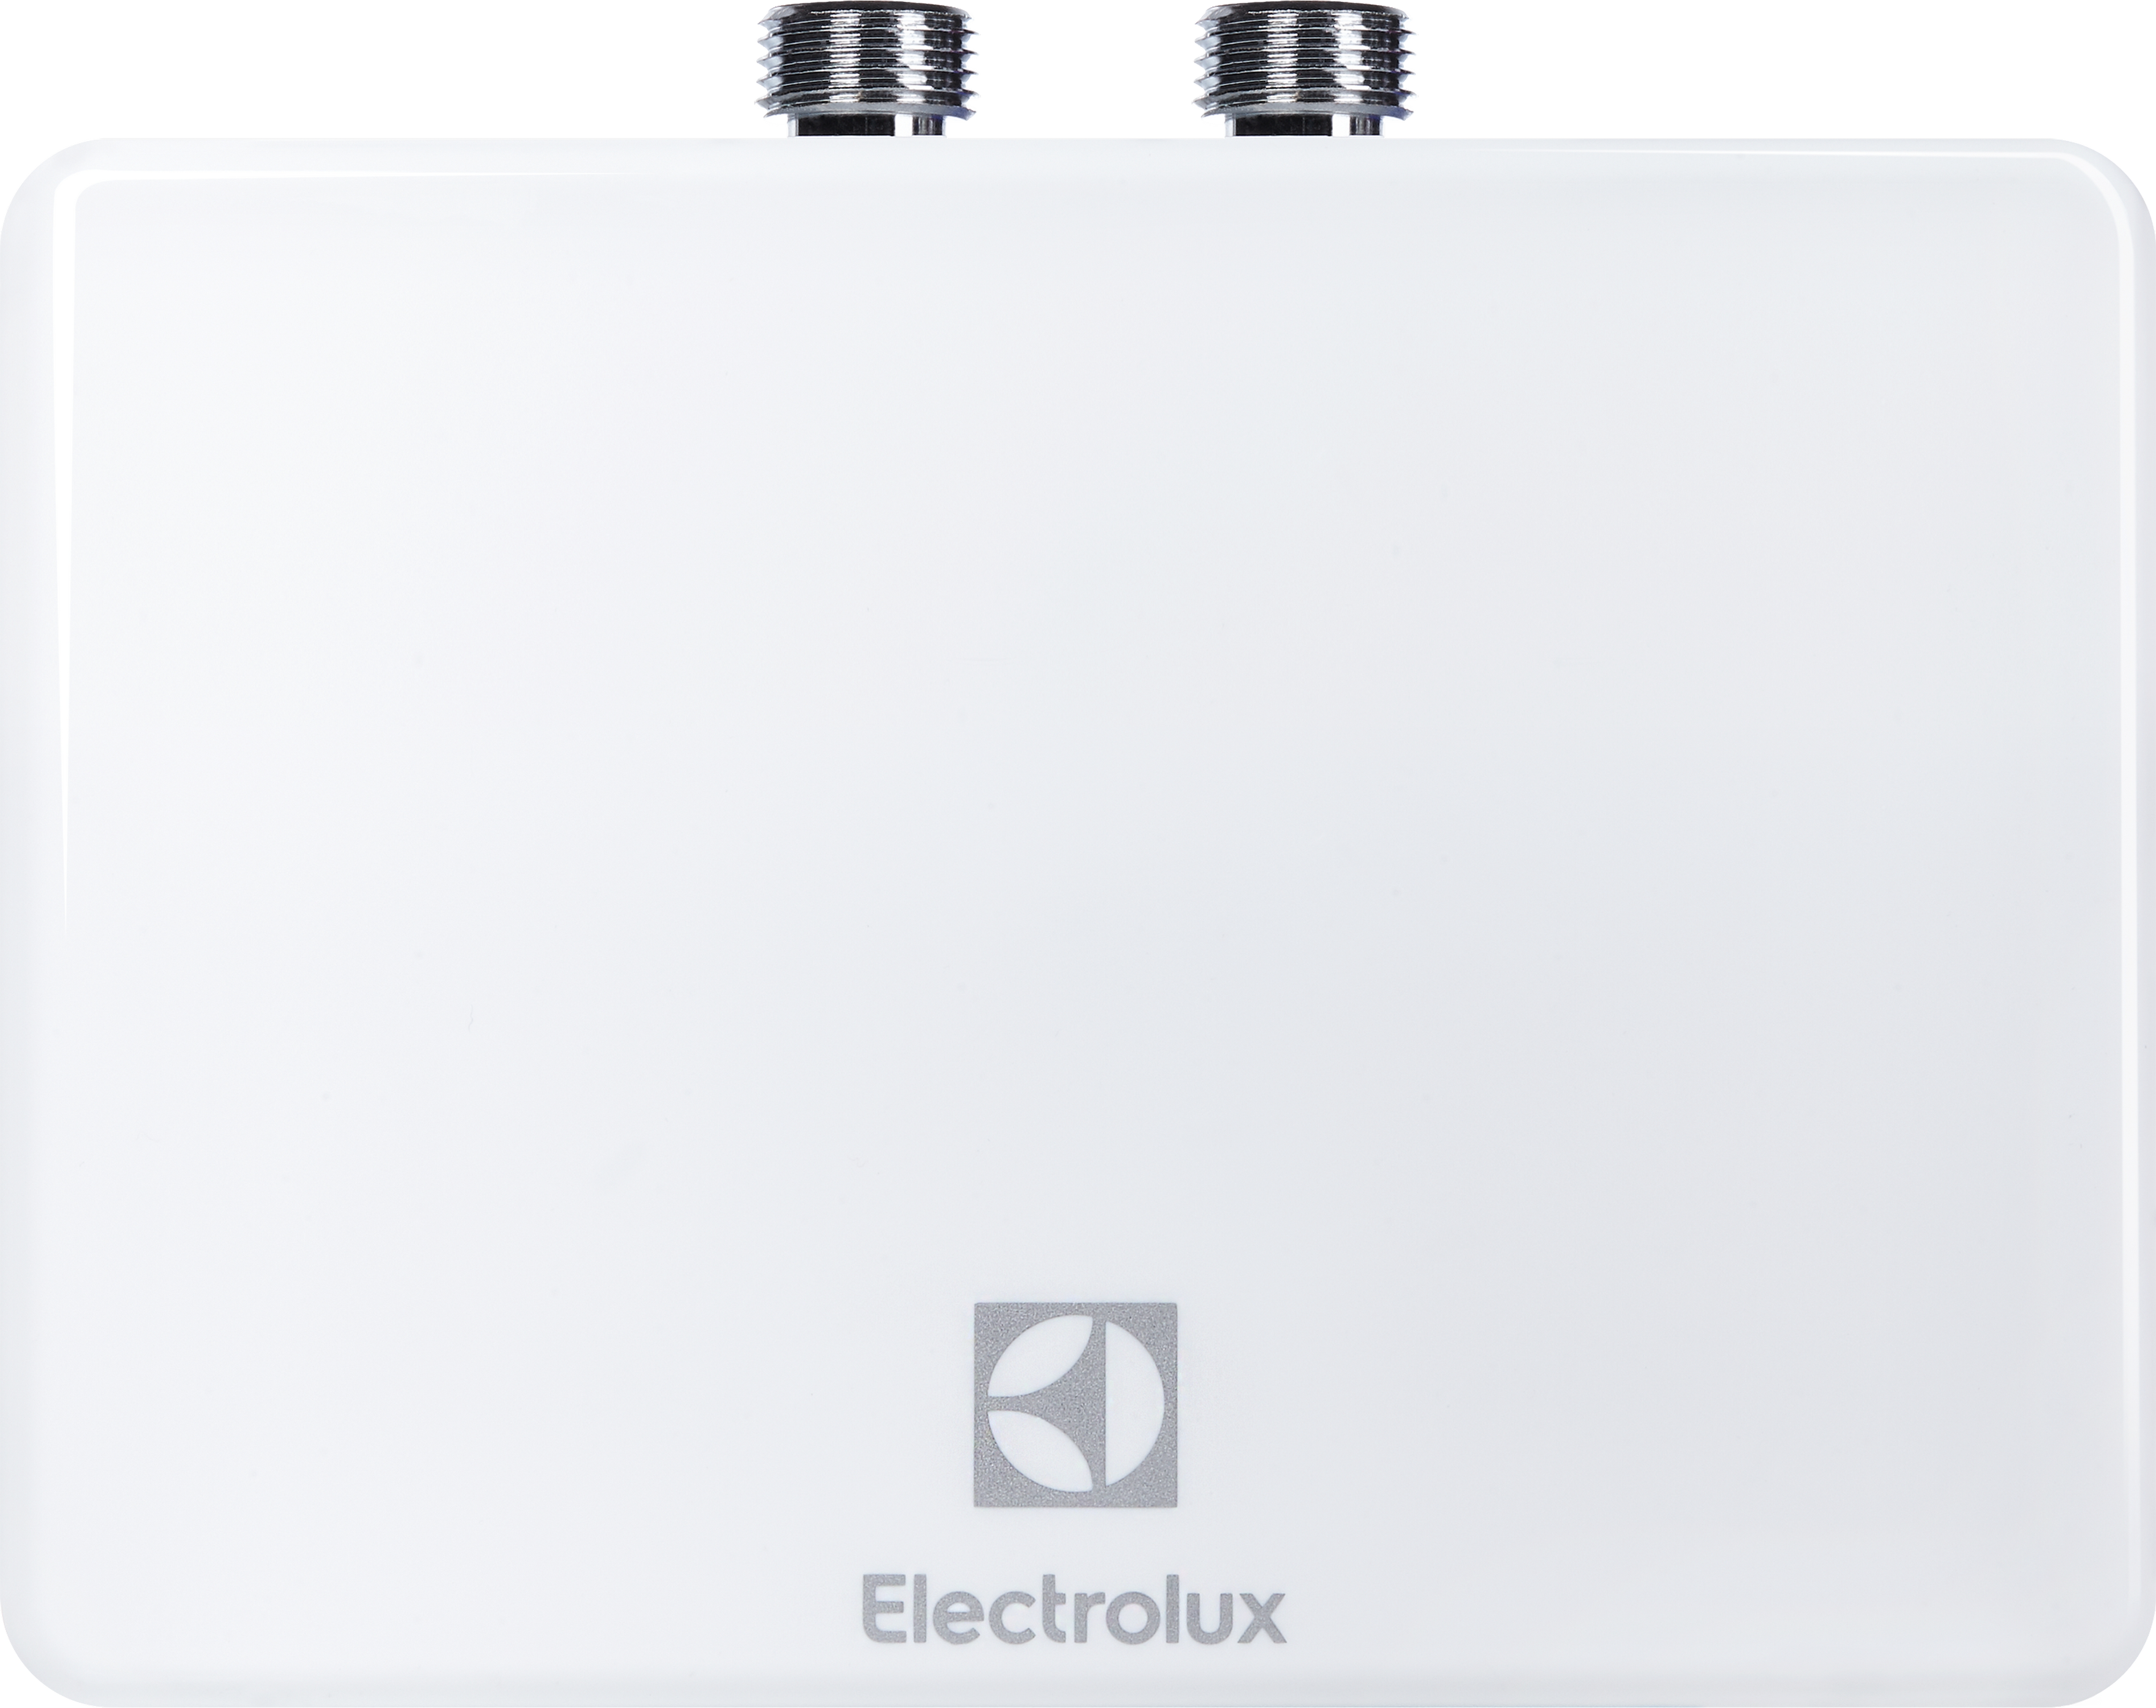 Проточный водонагреватель Electrolux NP 4 Aquatronic 2.0 цена 2199.00 грн - фотография 2